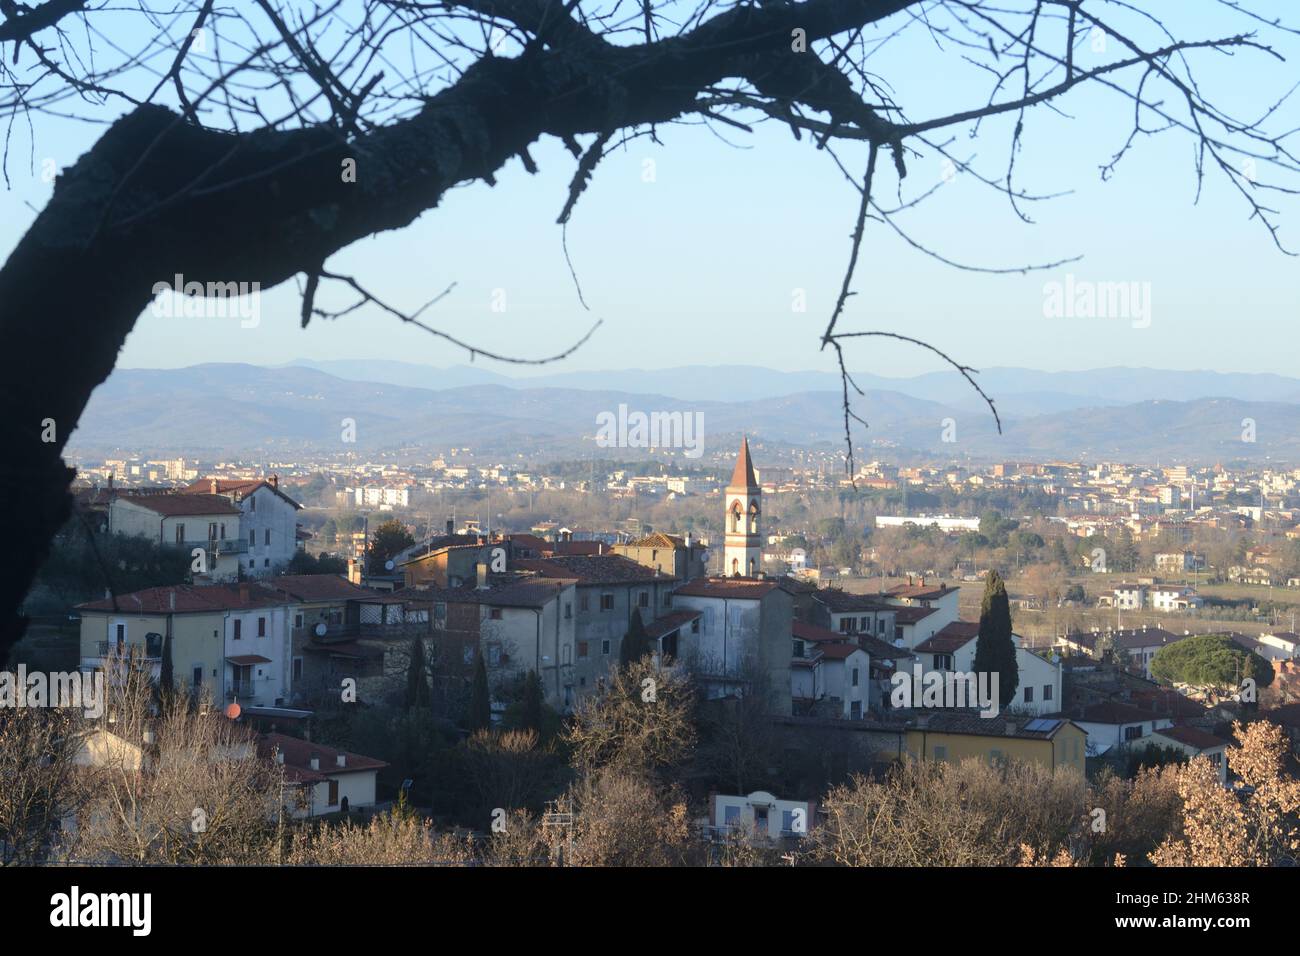 Vue panoramique d'un petit village typique dans le pays toscan avec un arbre nu flou au premier plan Banque D'Images